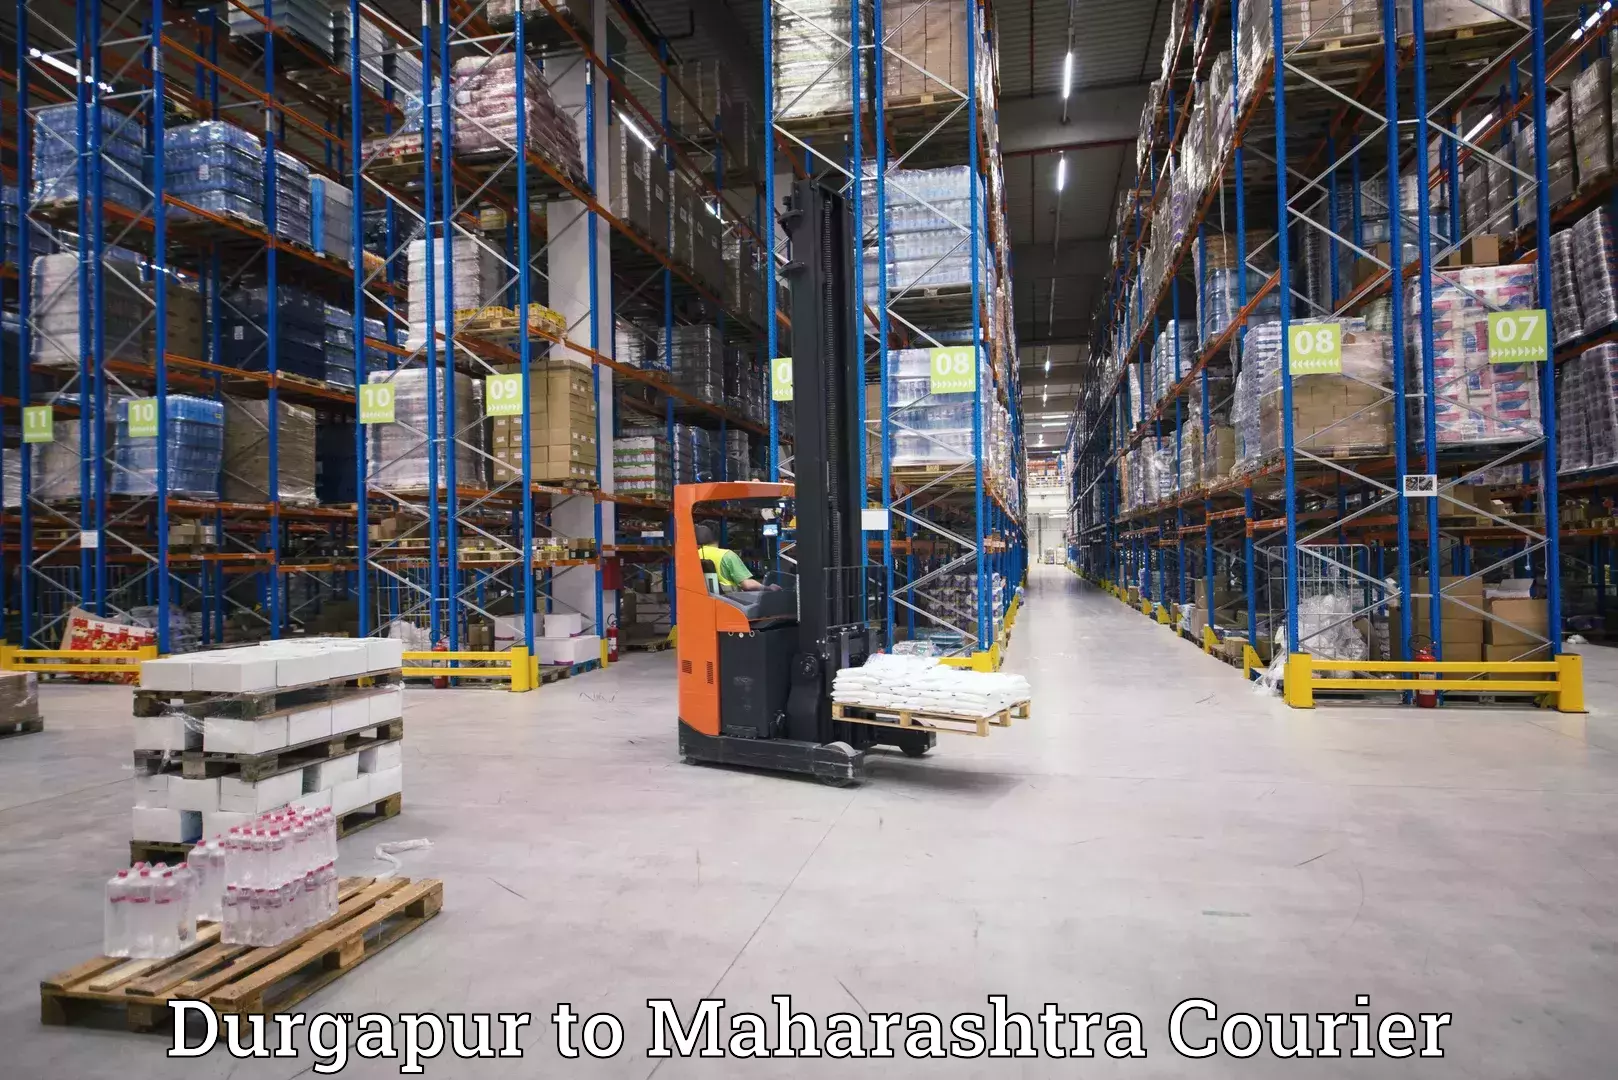 Nationwide parcel services Durgapur to Panvel